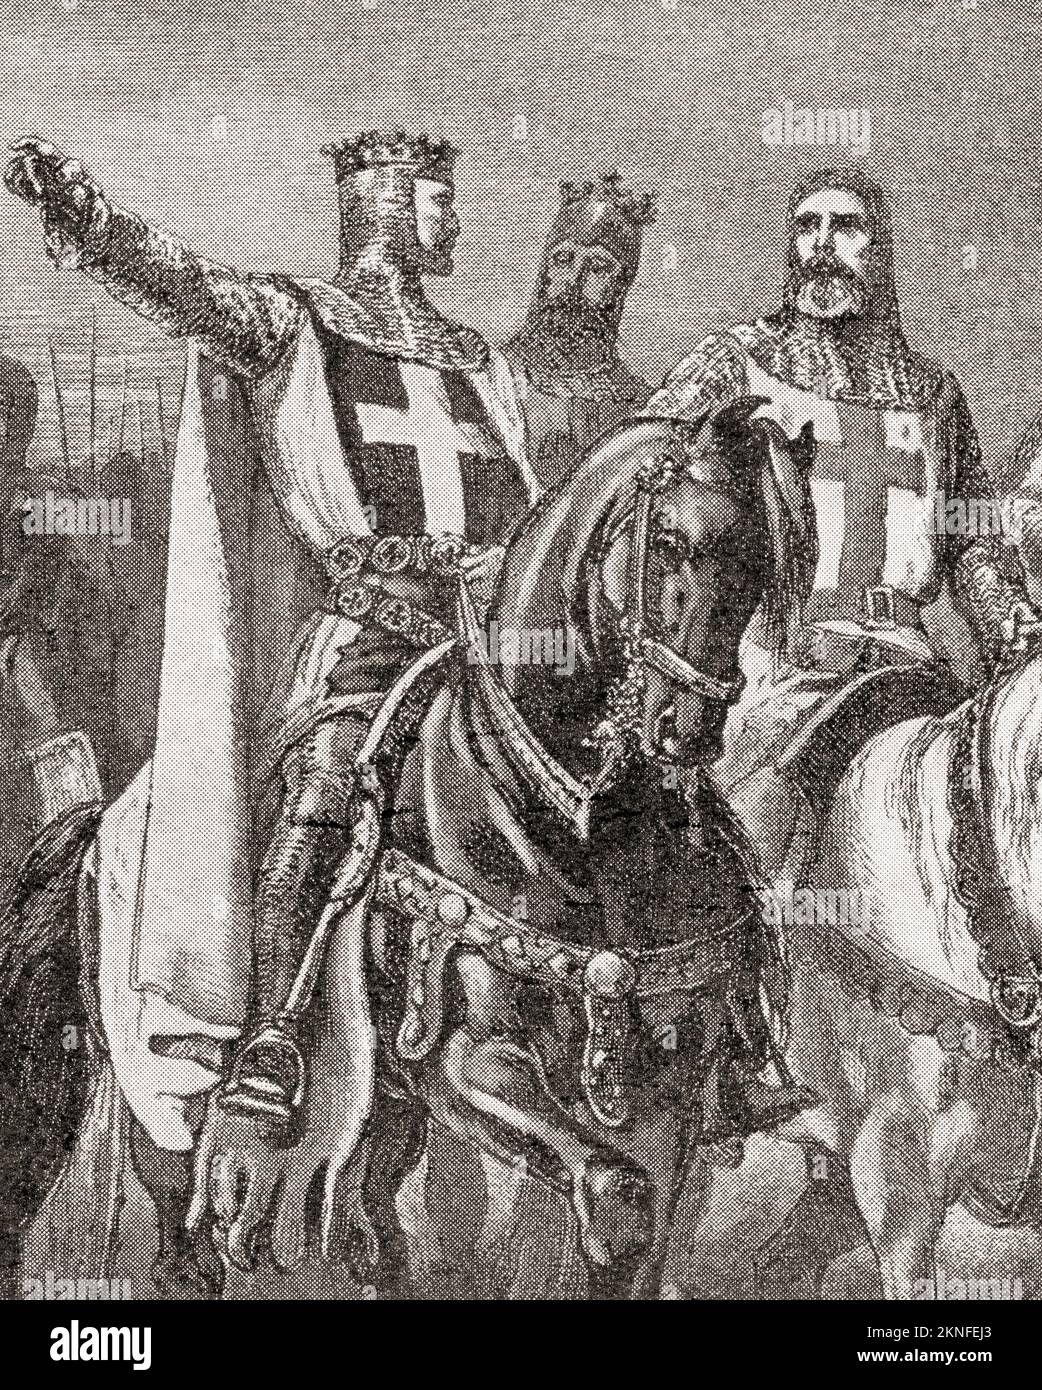 Richard I, alias Richard Cœur de Lion oder Richard der Löwenherz 1157 – 1199. König von England. Hier während des dritten Kreuzzugs gesehen. Aus der Geschichte Englands, veröffentlicht 1907 Stockfoto